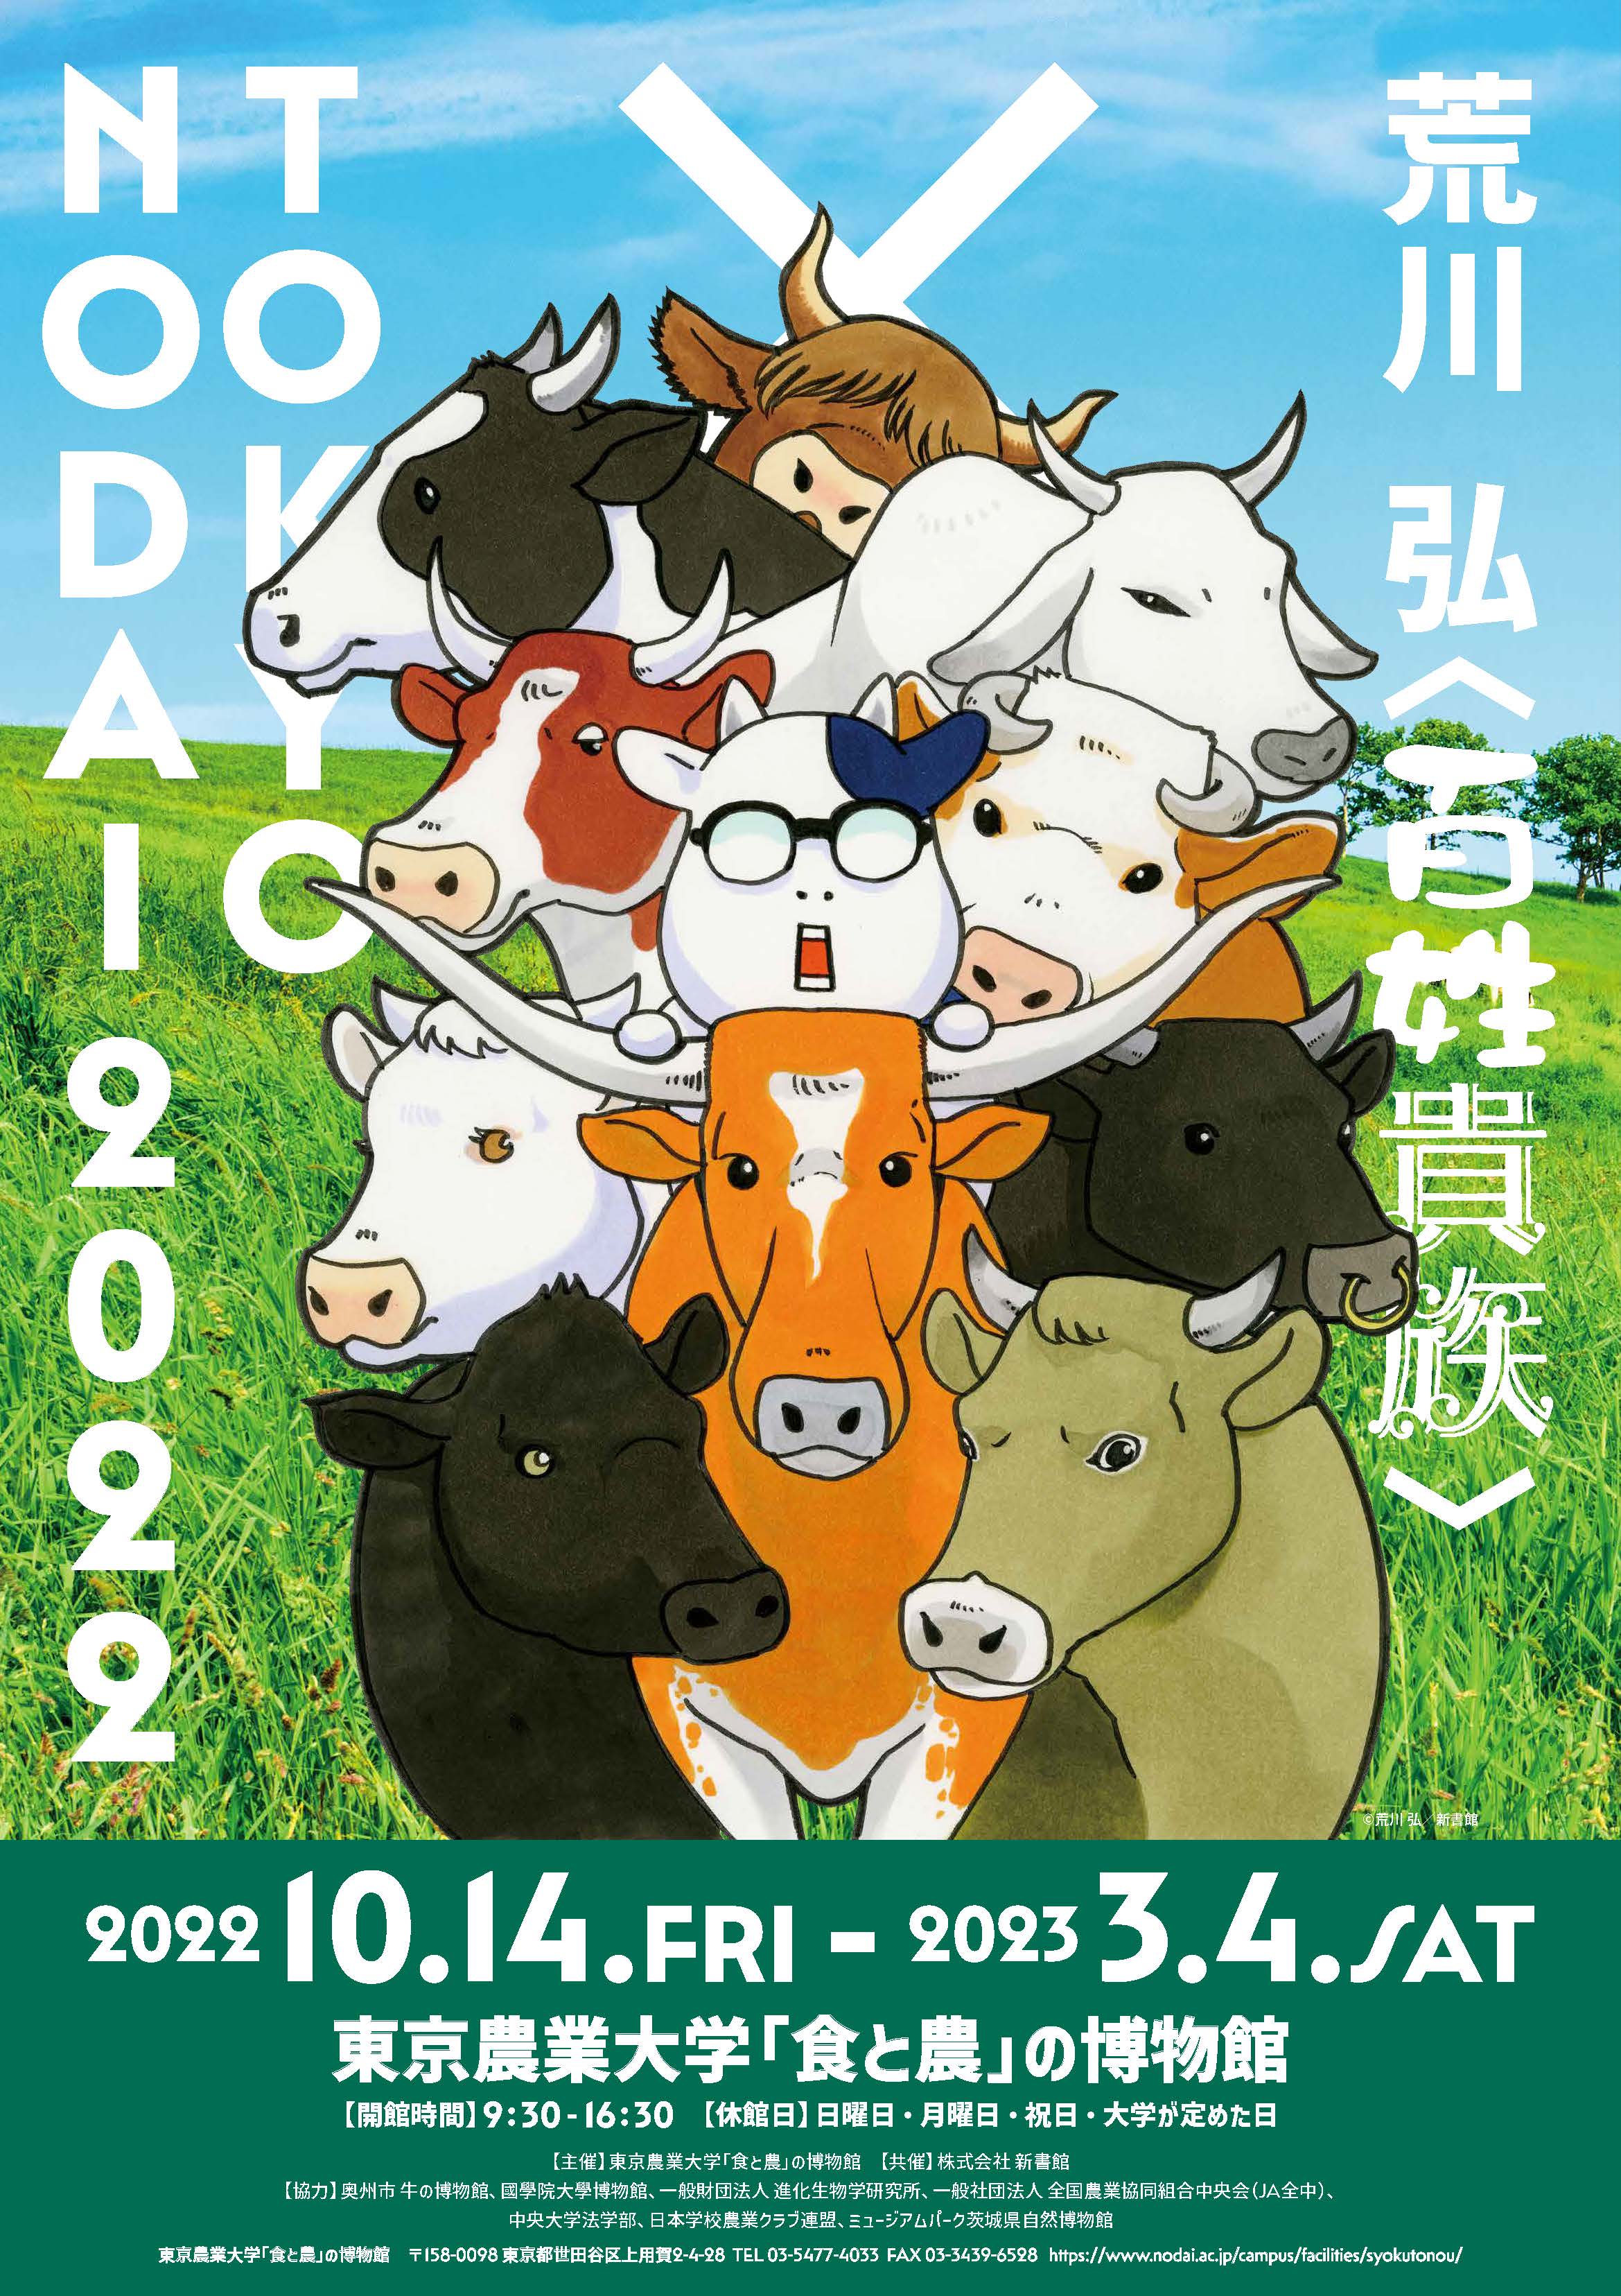 特別展「荒川 弘〈百姓貴族〉× TOKYO NODAI 2022」
　　　【会期】2022年10月14日（金）～ 2023年３月4日（土）